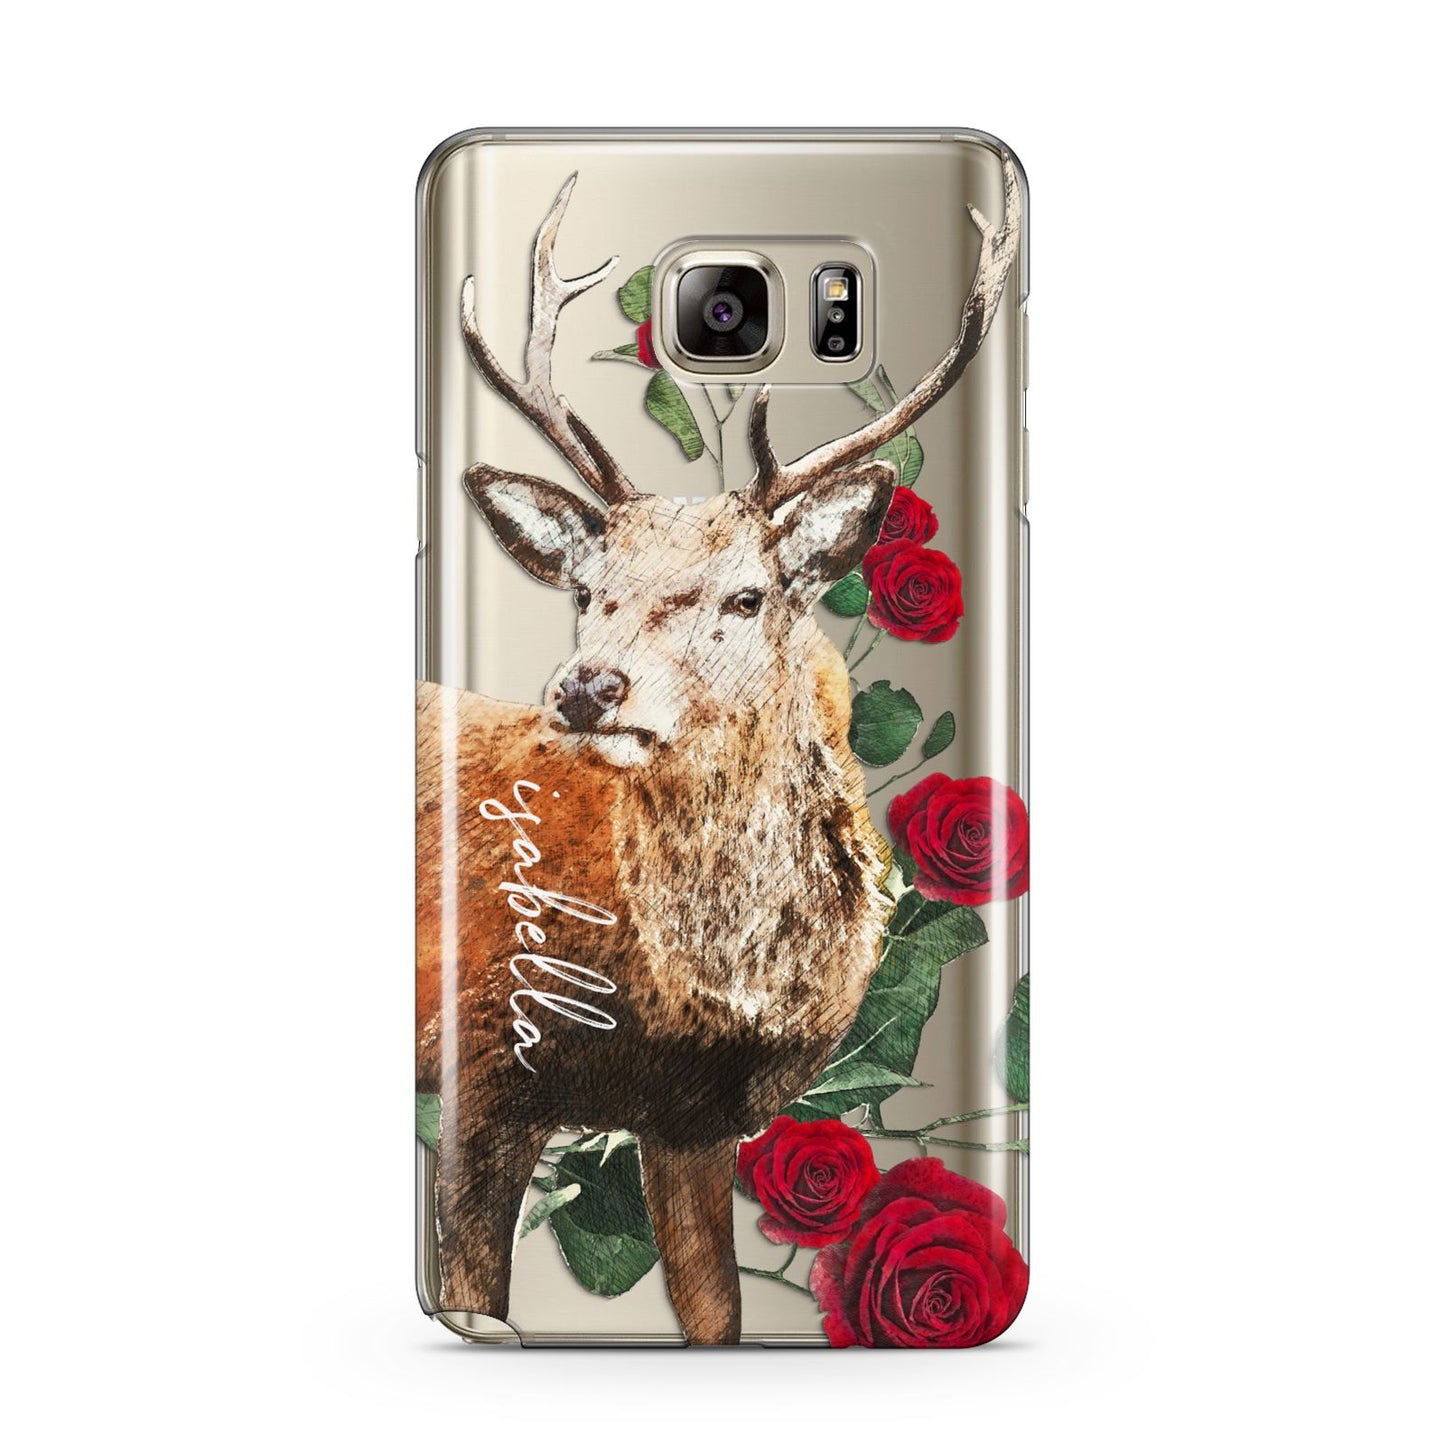 Personalised Deer Name Samsung Galaxy Note 5 Case